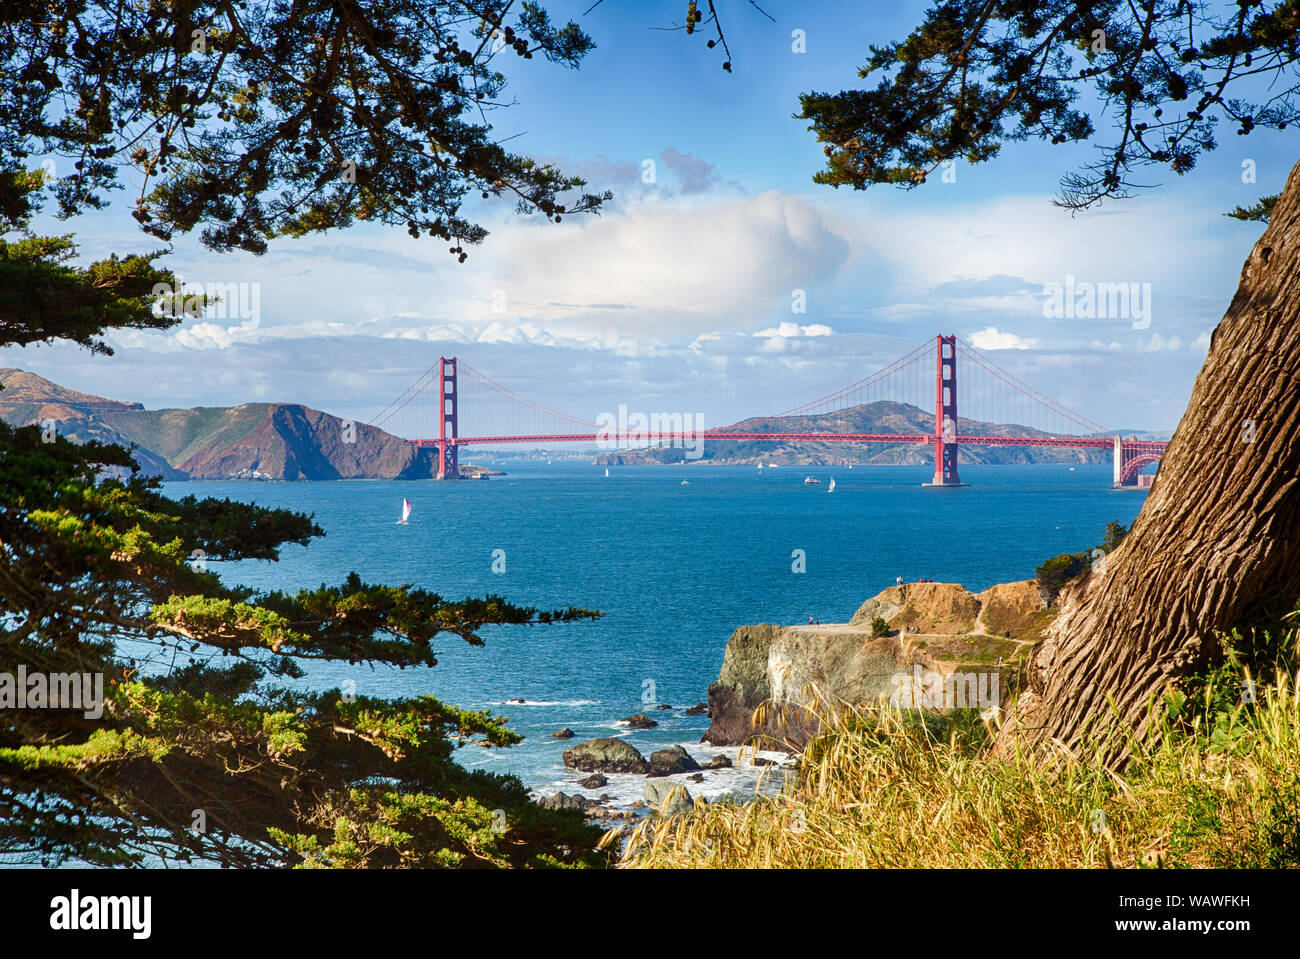 Barcos de vela en la bahía de San Francisco con el Golden Gate Bridge en el fondo como tomada de Lands End. Foto de stock